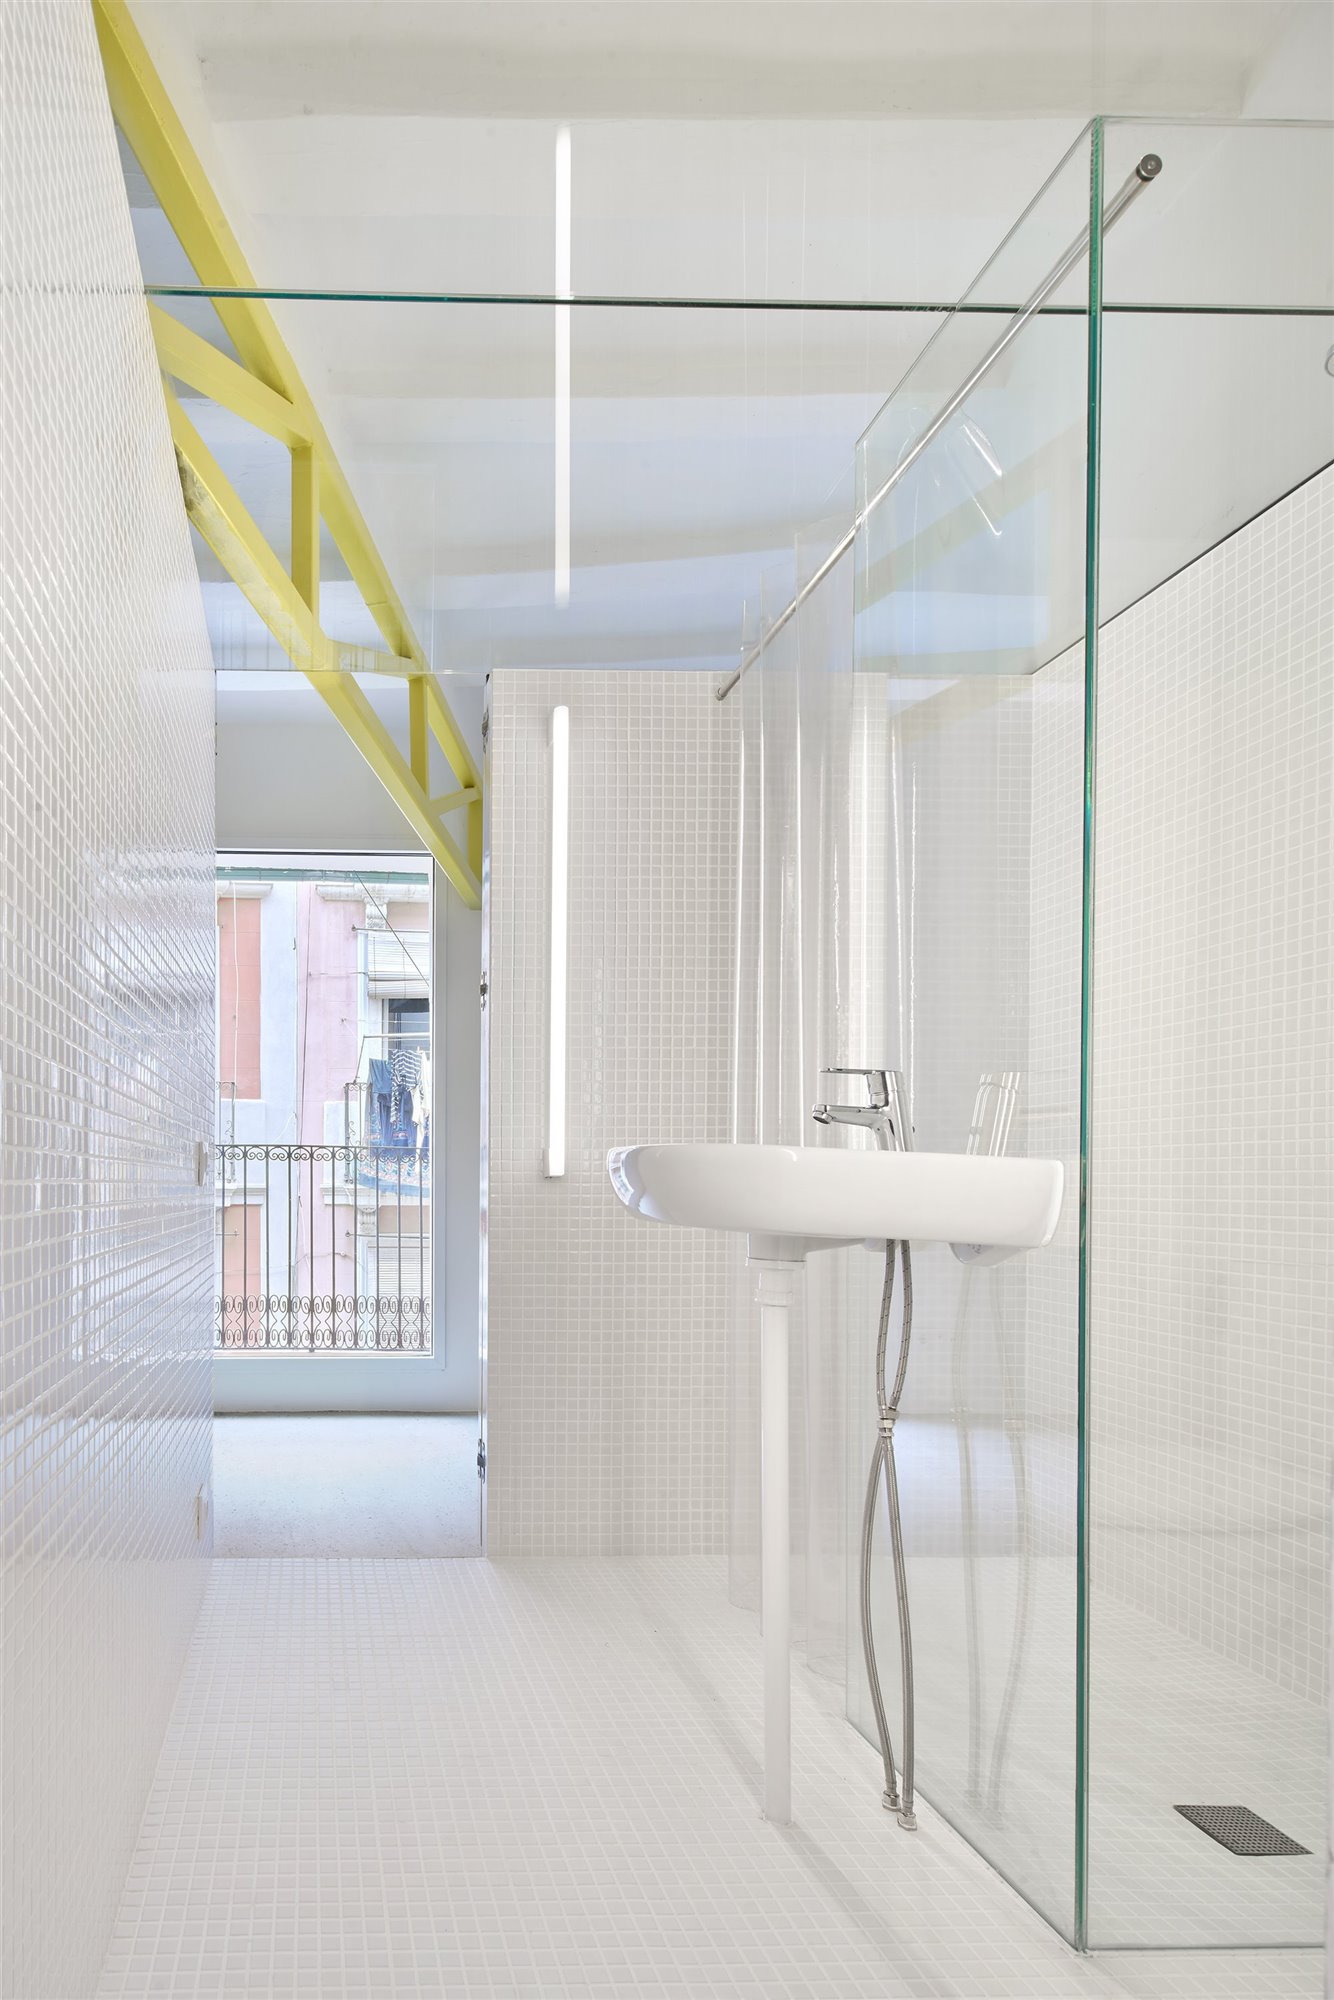 Al baño-aseo del apartamento se puede acceder desde las dos habitaciones que contempla la propiedad. Foto: José Hevia